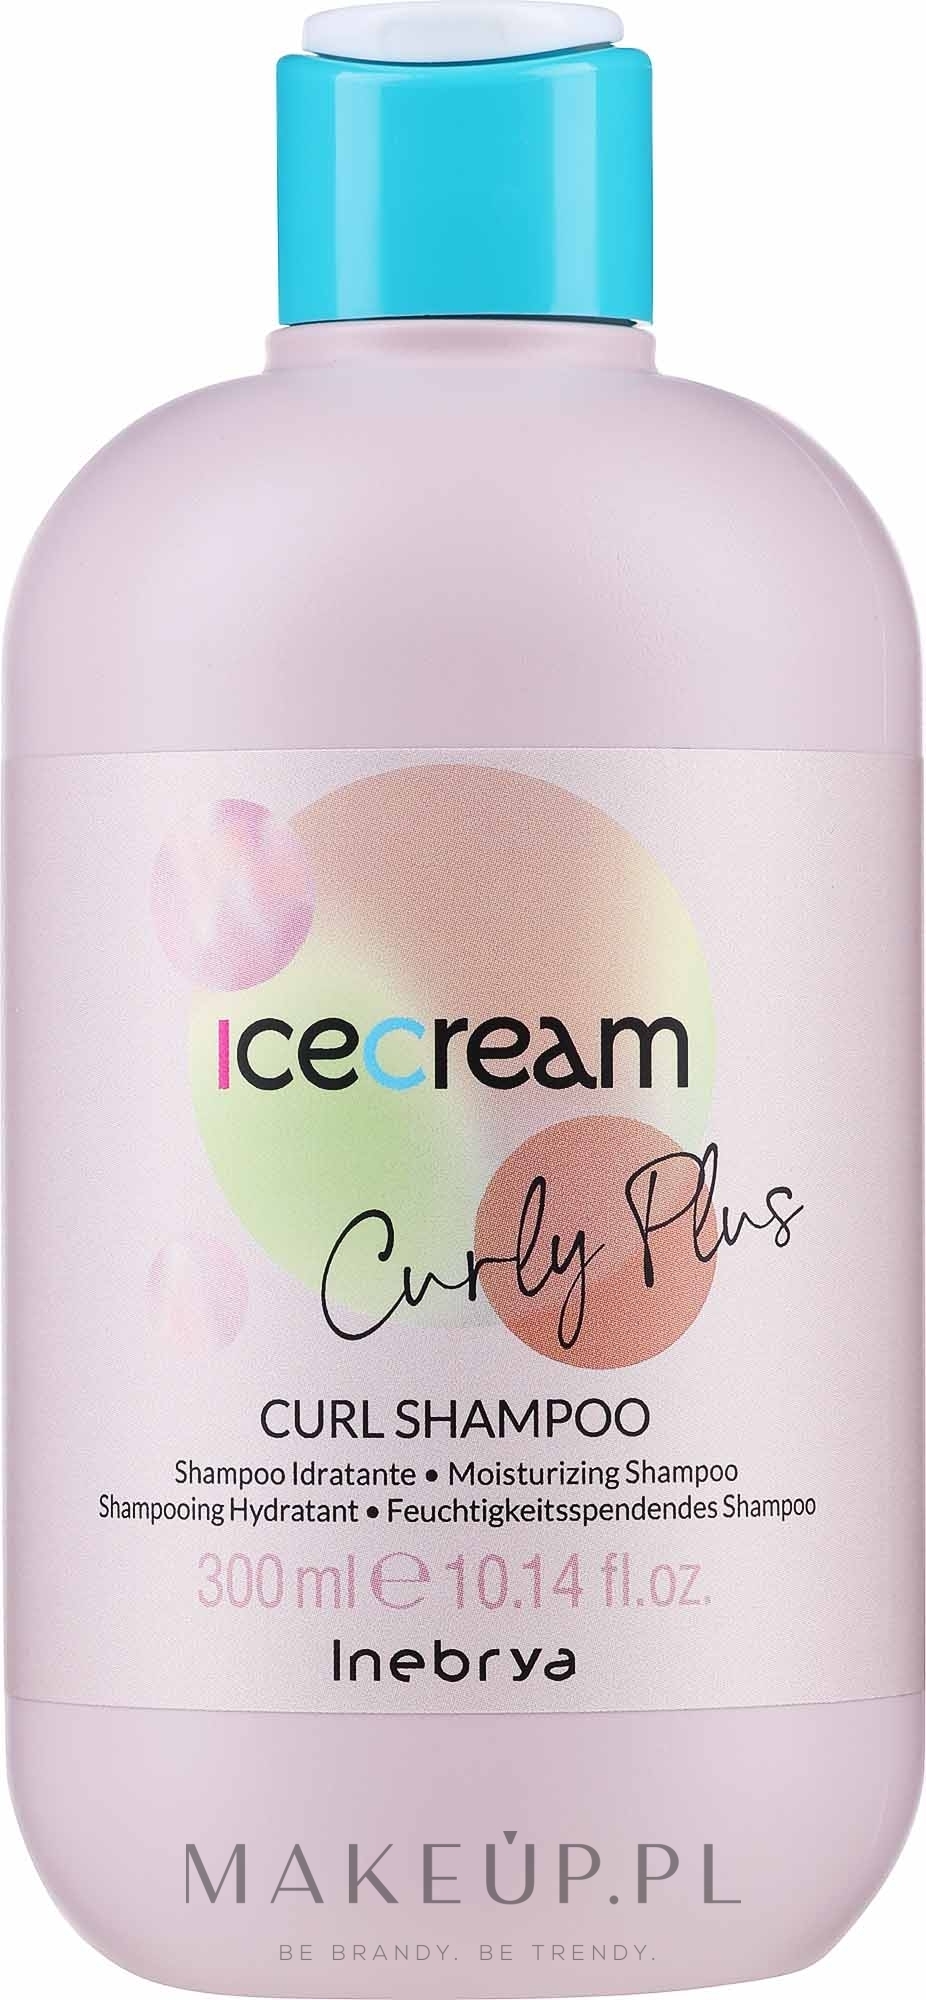 ice cream szampon do włosów kręconych